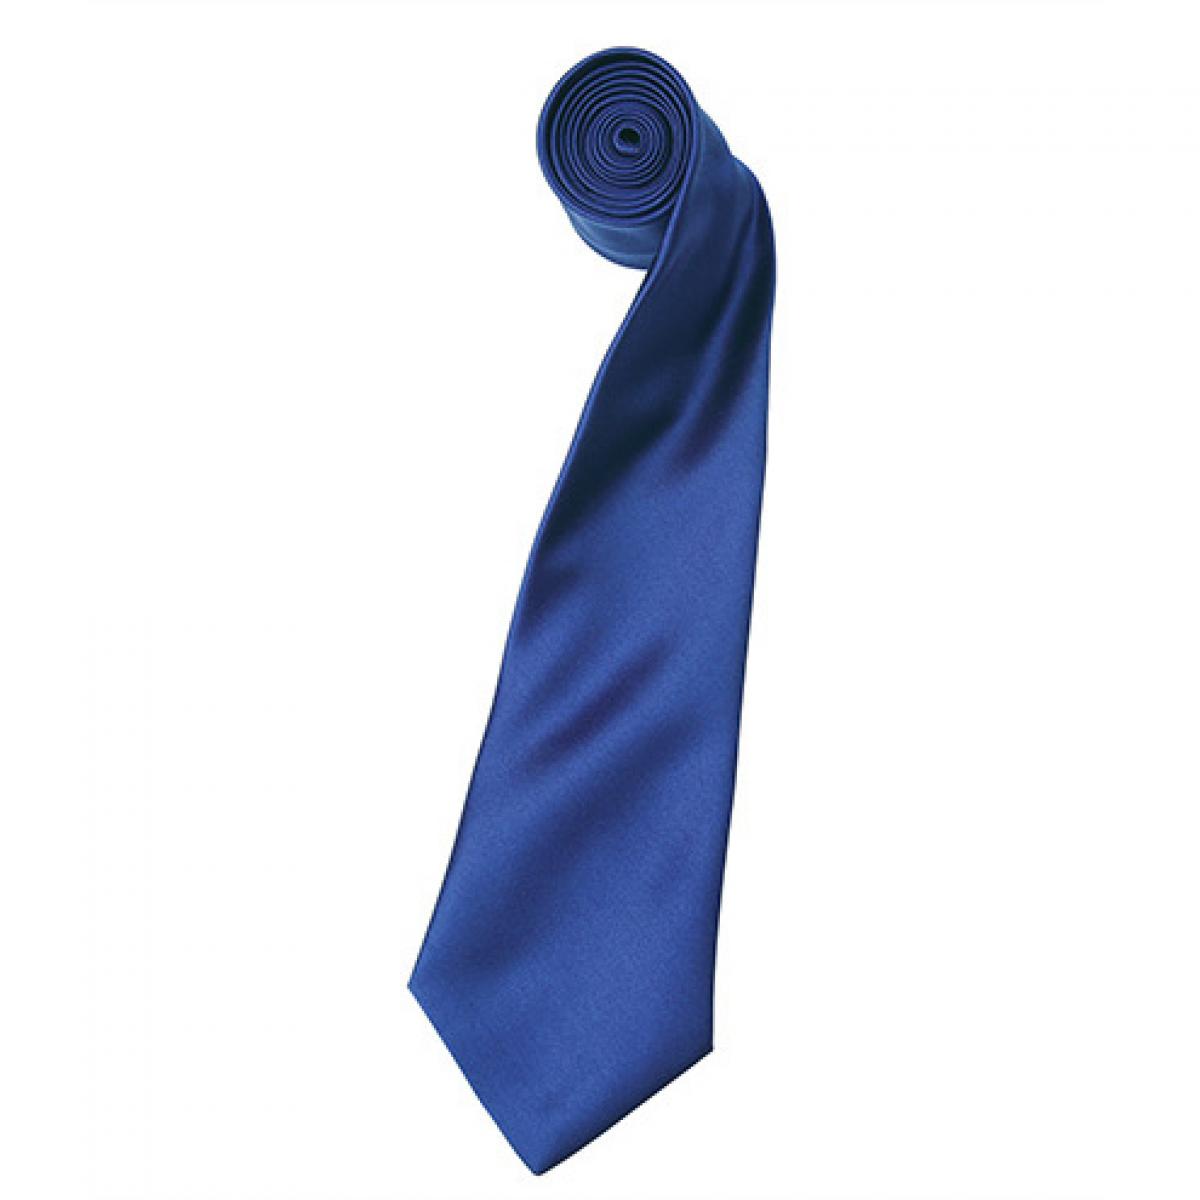 Hersteller: Premier Workwear Herstellernummer: PR750 Artikelbezeichnung: Satin Tie ´Colours´ / 144 x 8,5 cm Farbe: Marine Blue (ca. Pantone 281)